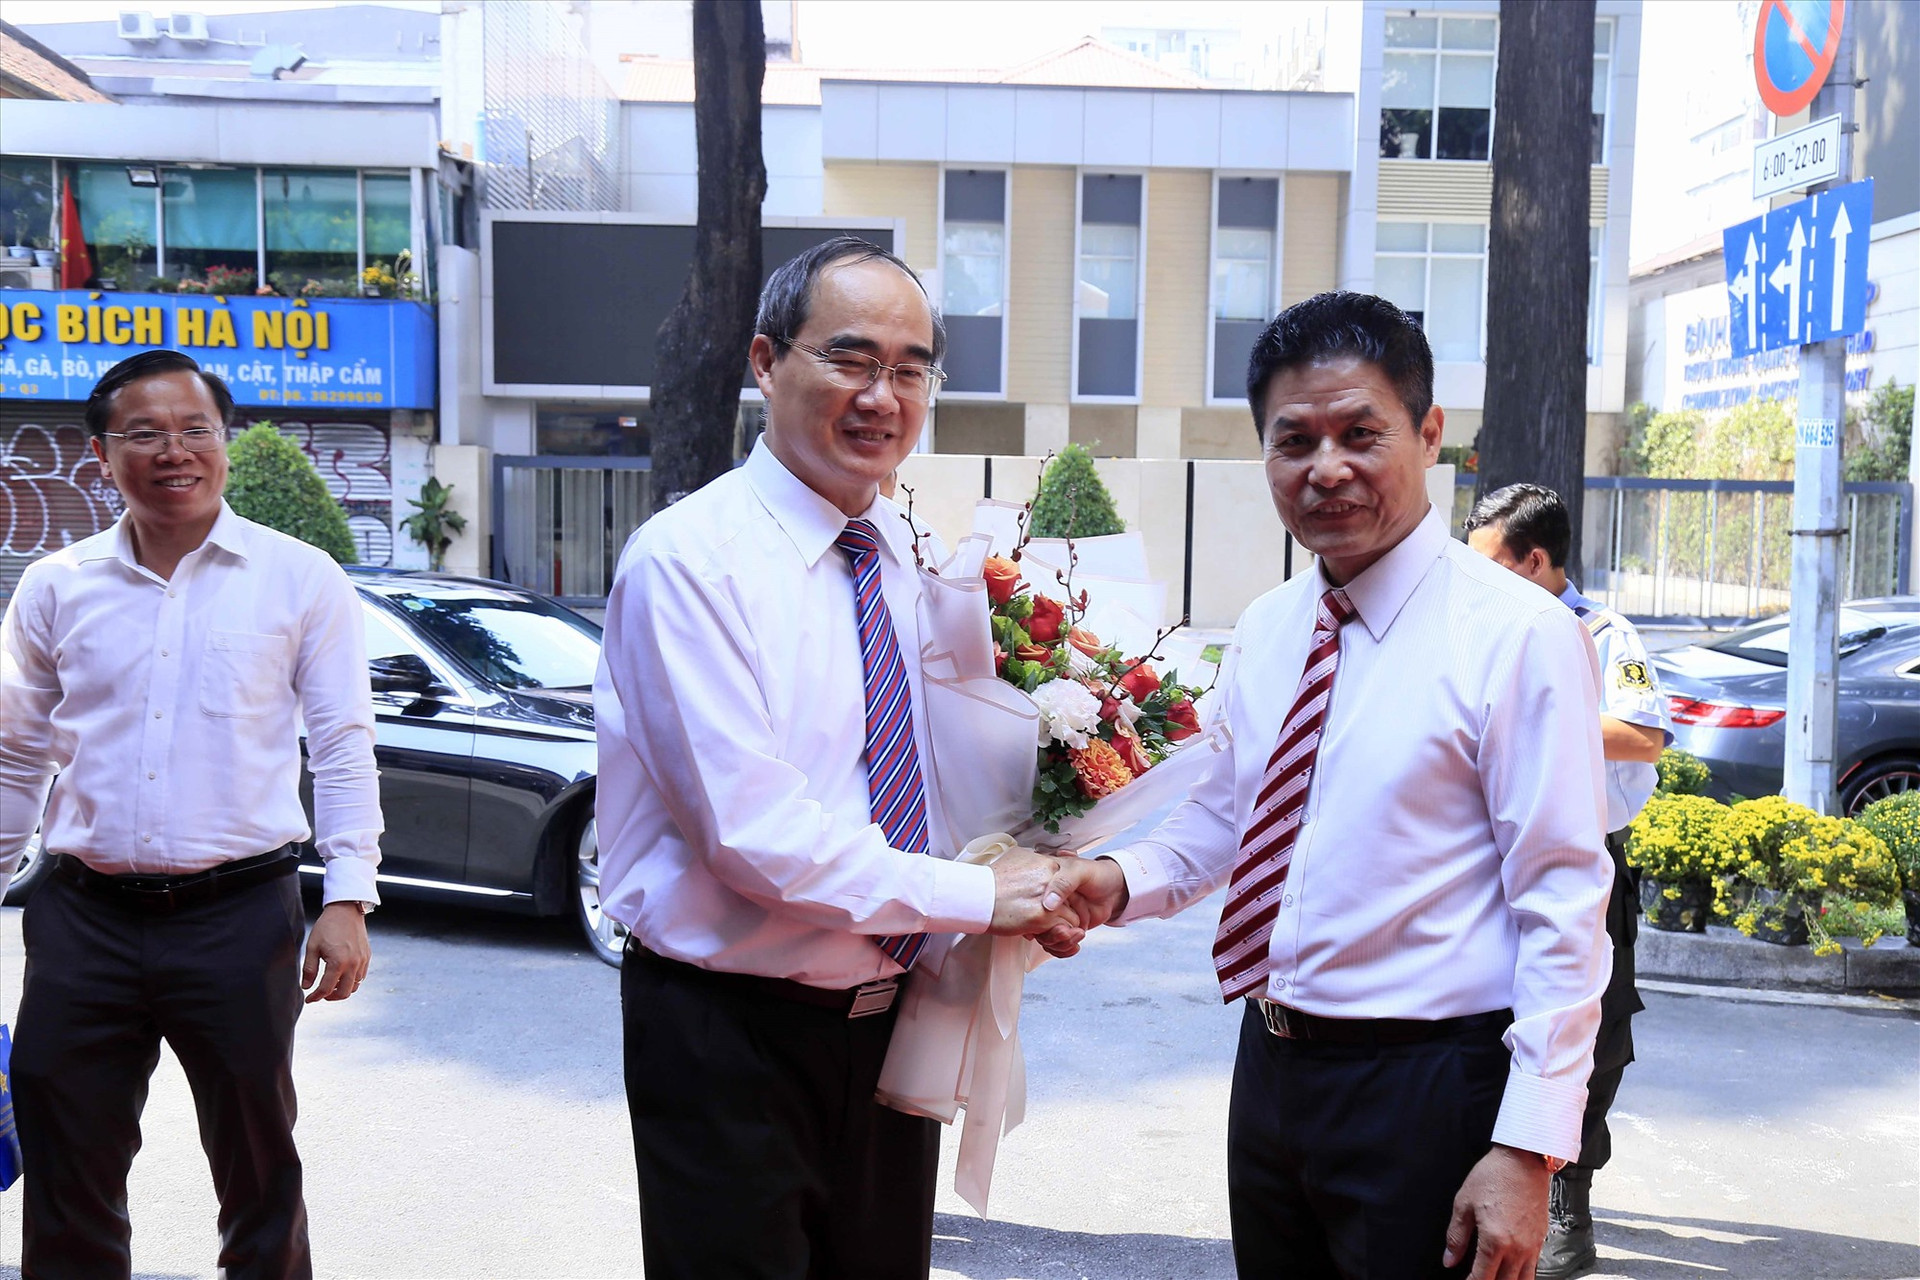 Lãnh đạo Vietravel đón tiếp Bí thư Thành ủy Nguyễn Thiện Nhân đến thăm chúc tết công ty nhân dịp đầu năm Canh Tý